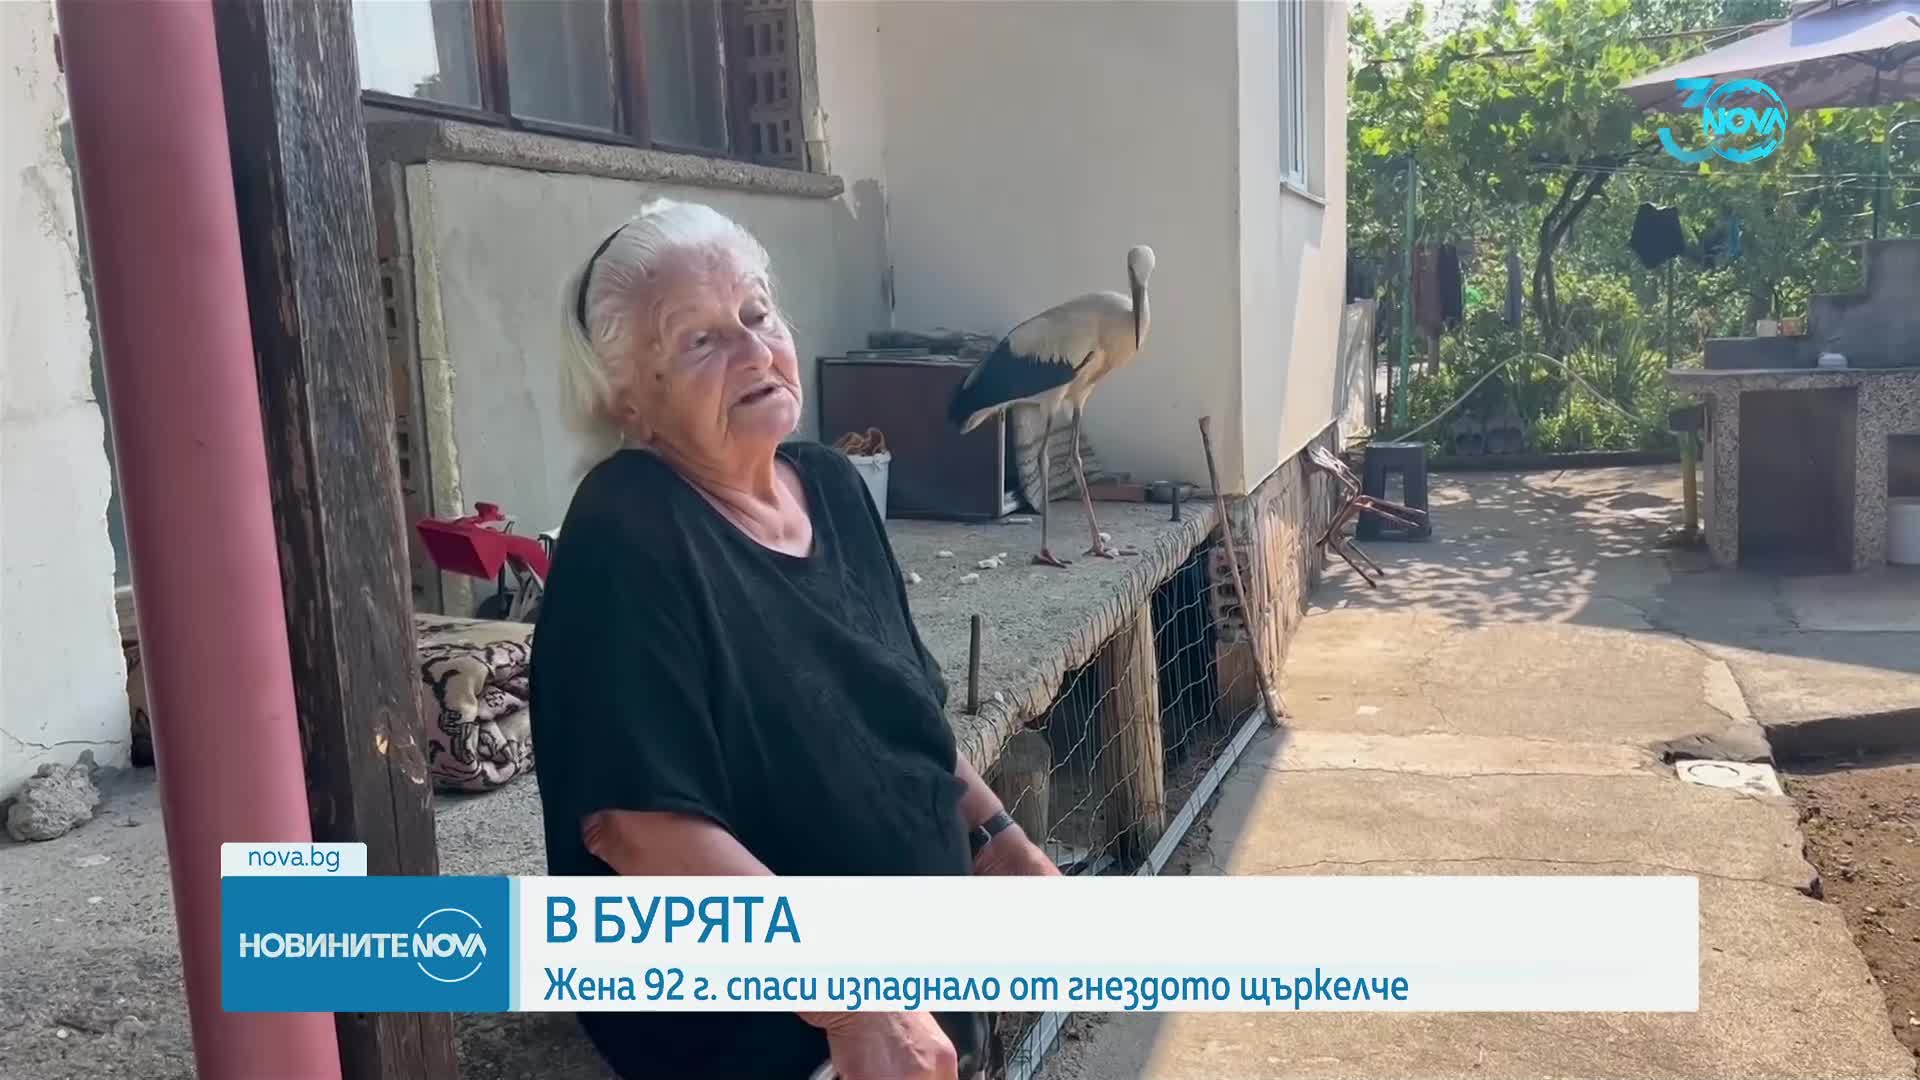 92-година жена паи боено о бяа келе в Казанлко - Vbox7